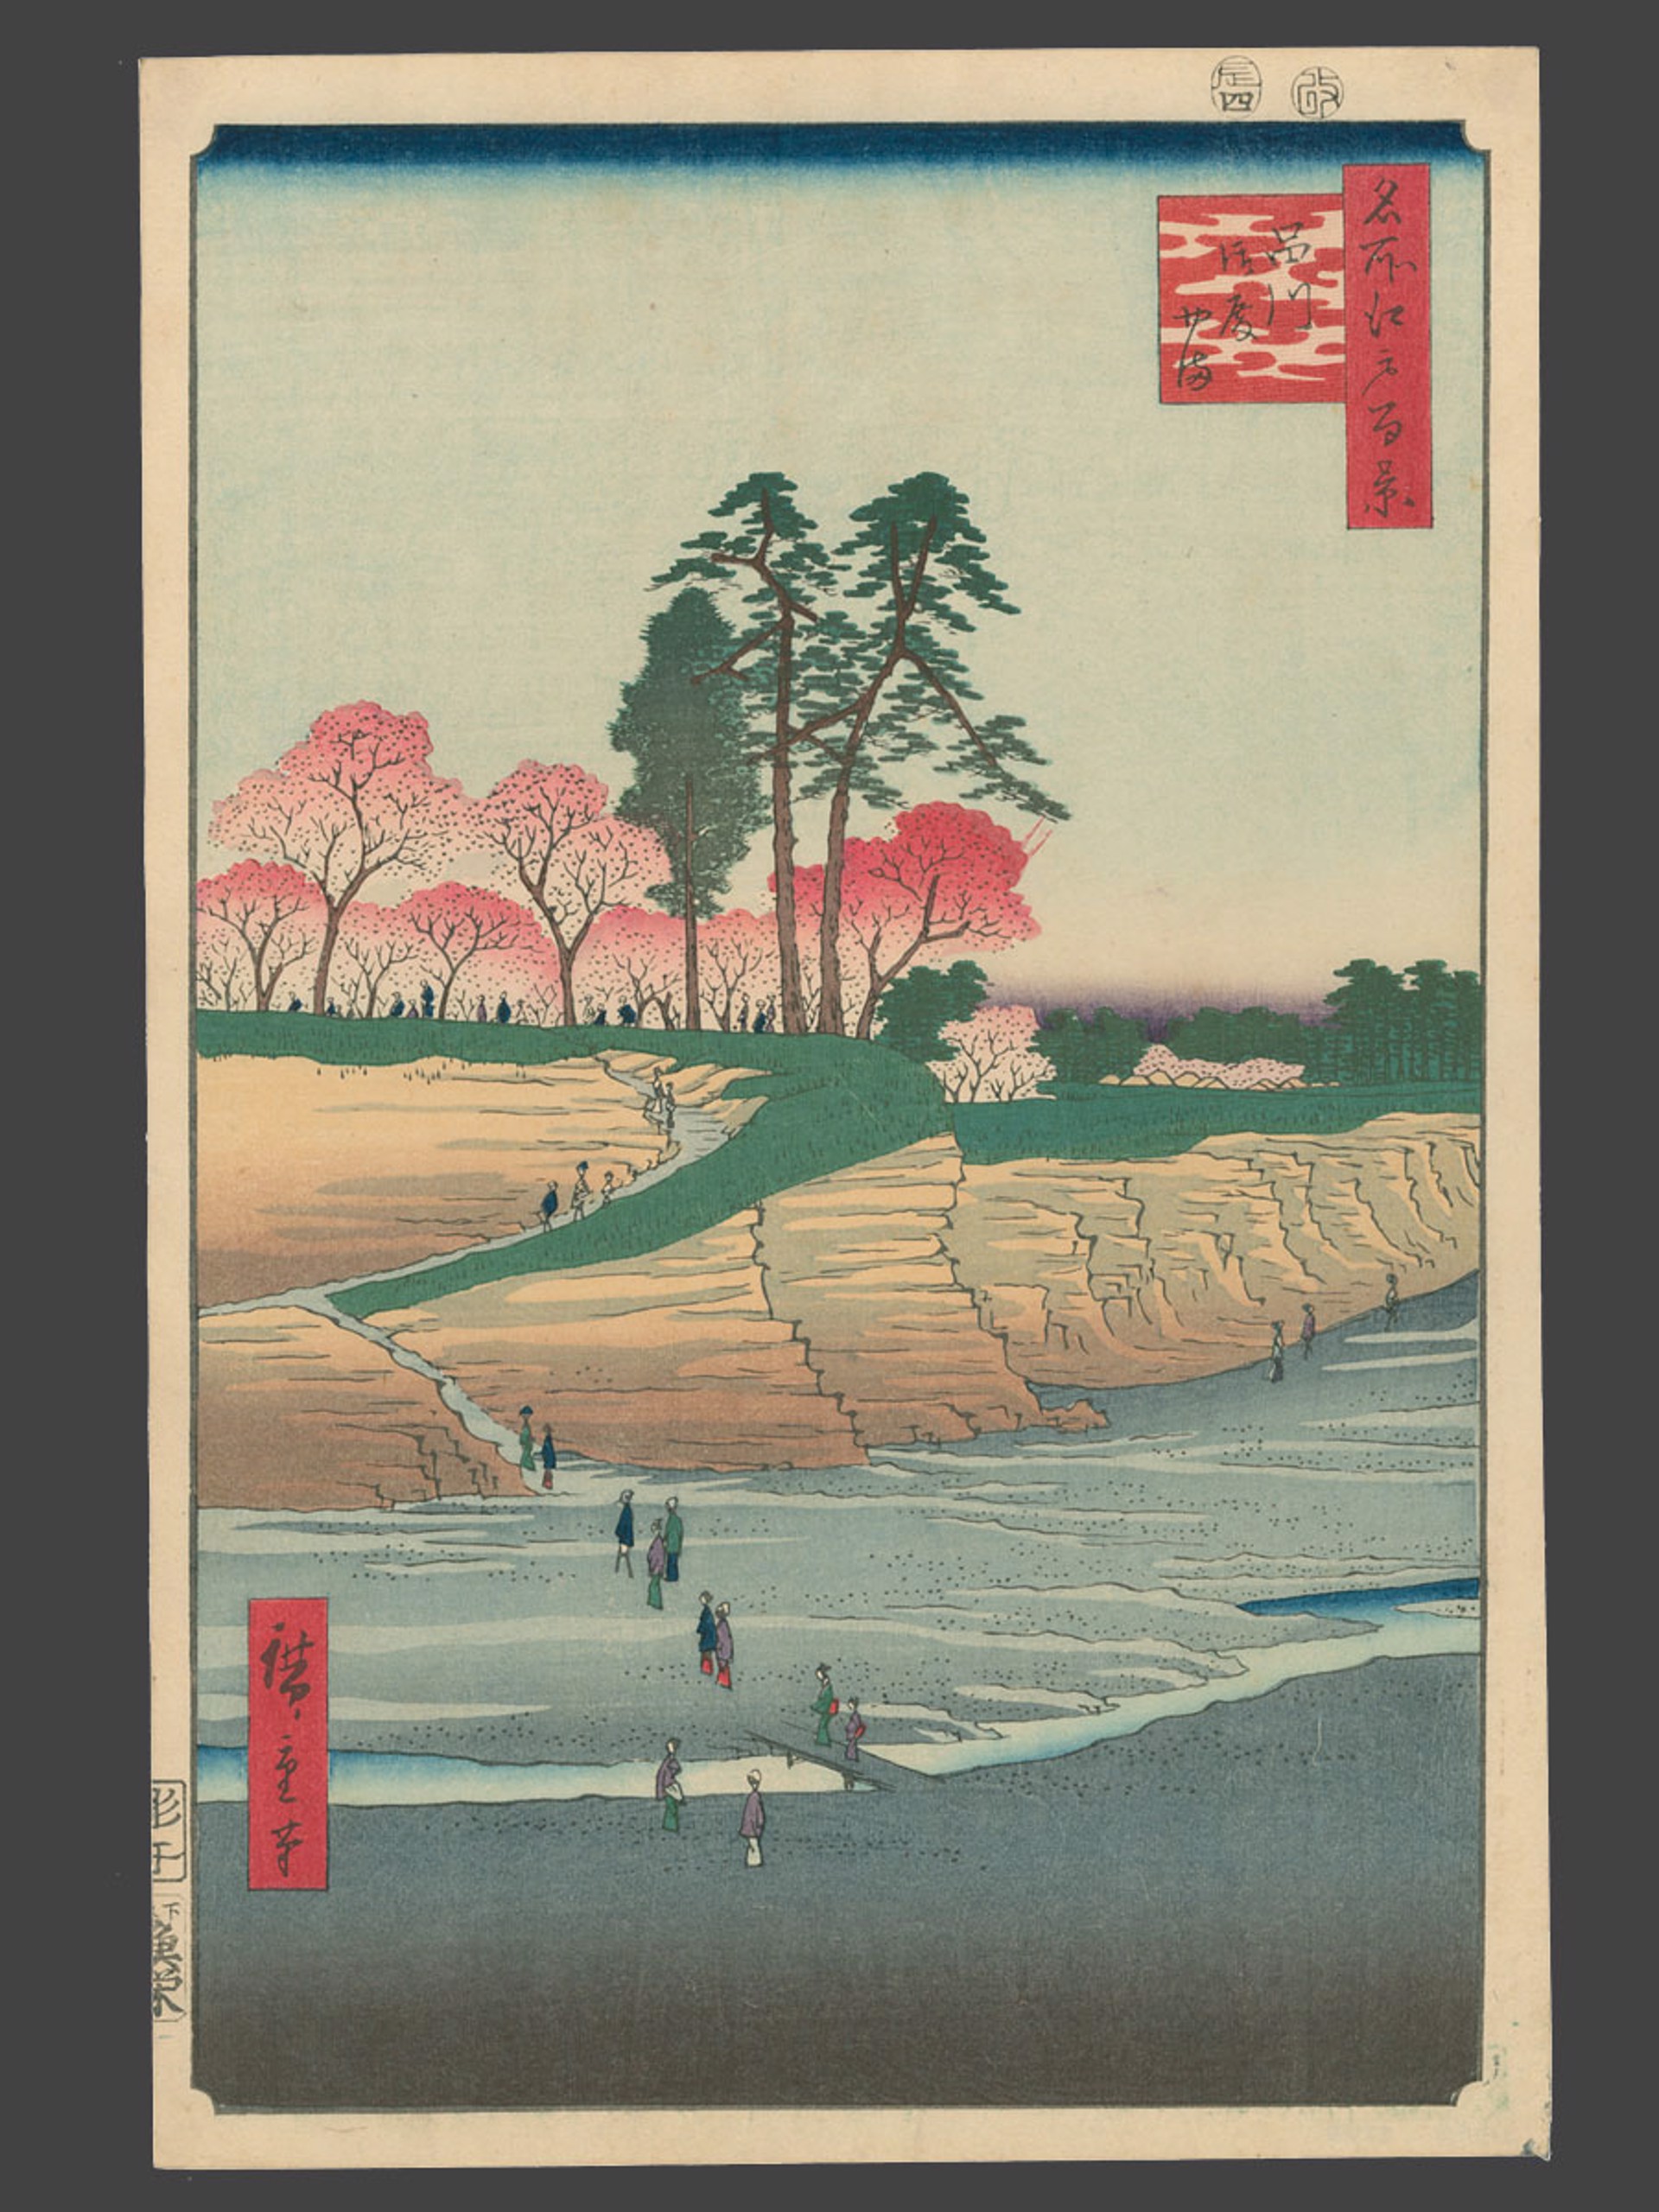 #28 Gotenyama Hill at Shinagawa 100 Views of Edo by Hiroshige